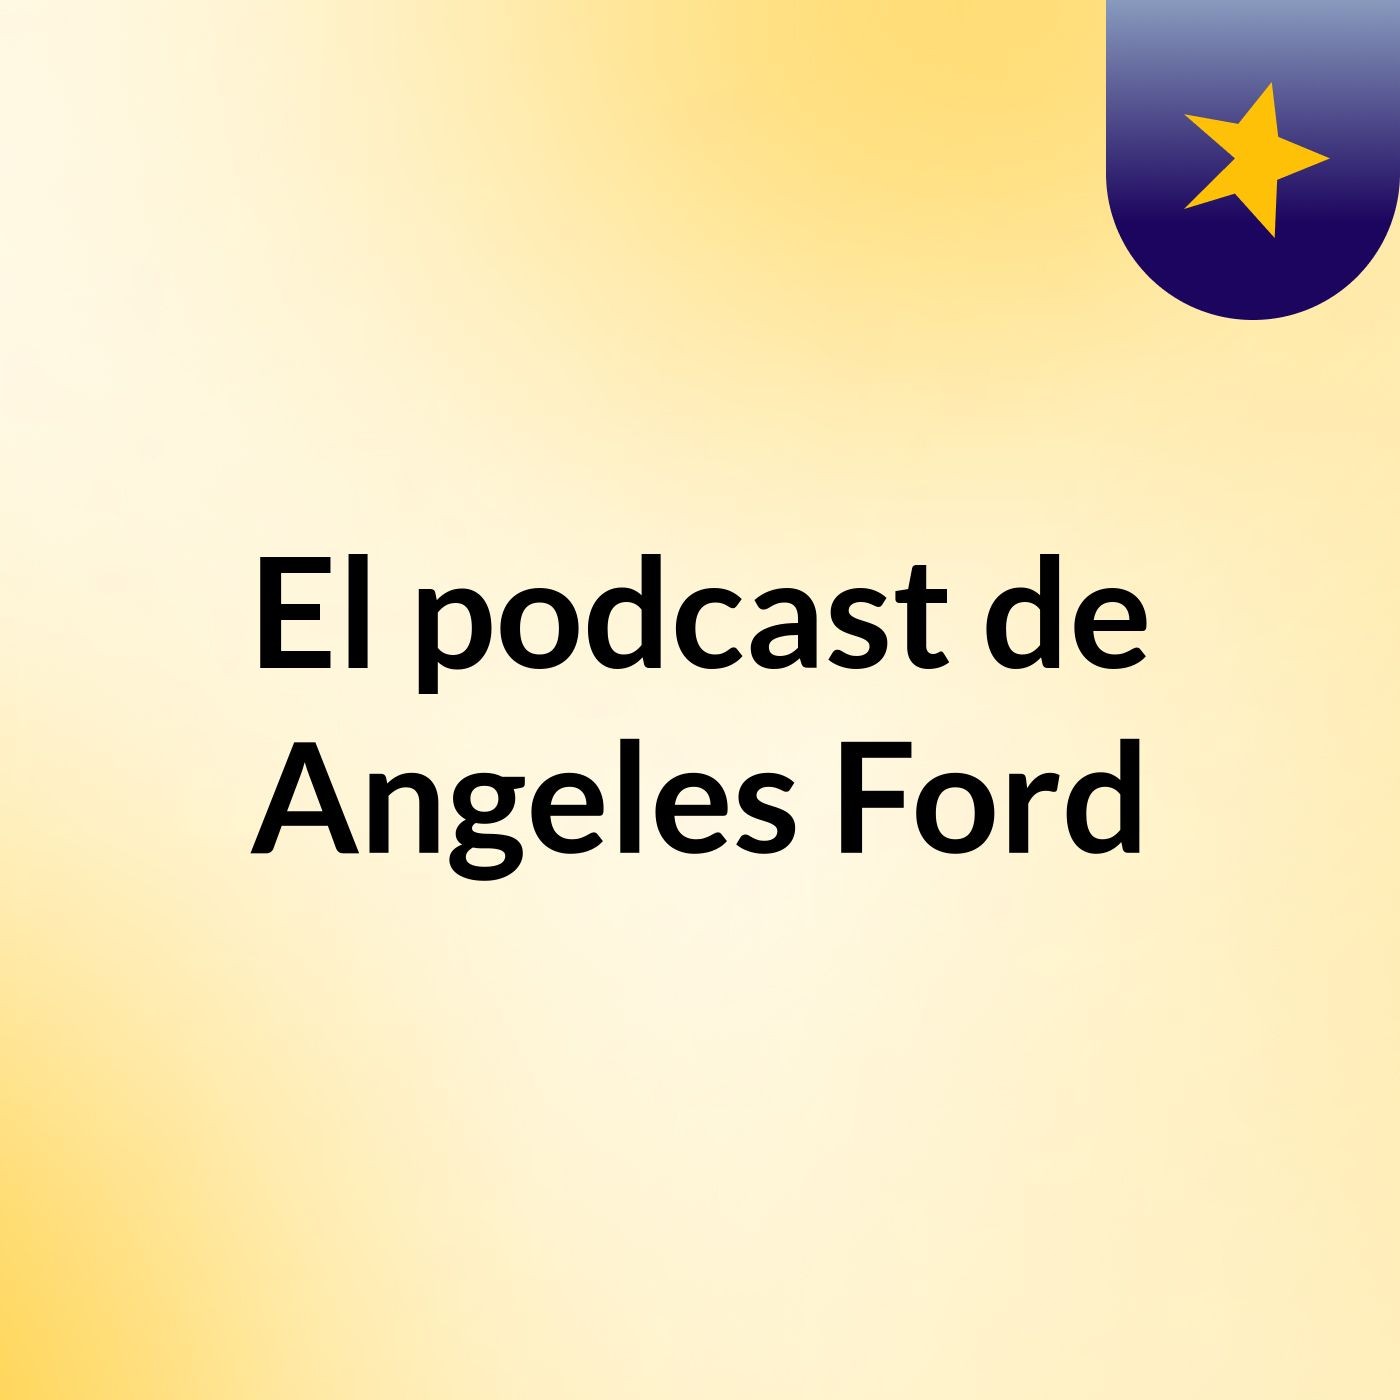 El podcast de Angeles Ford